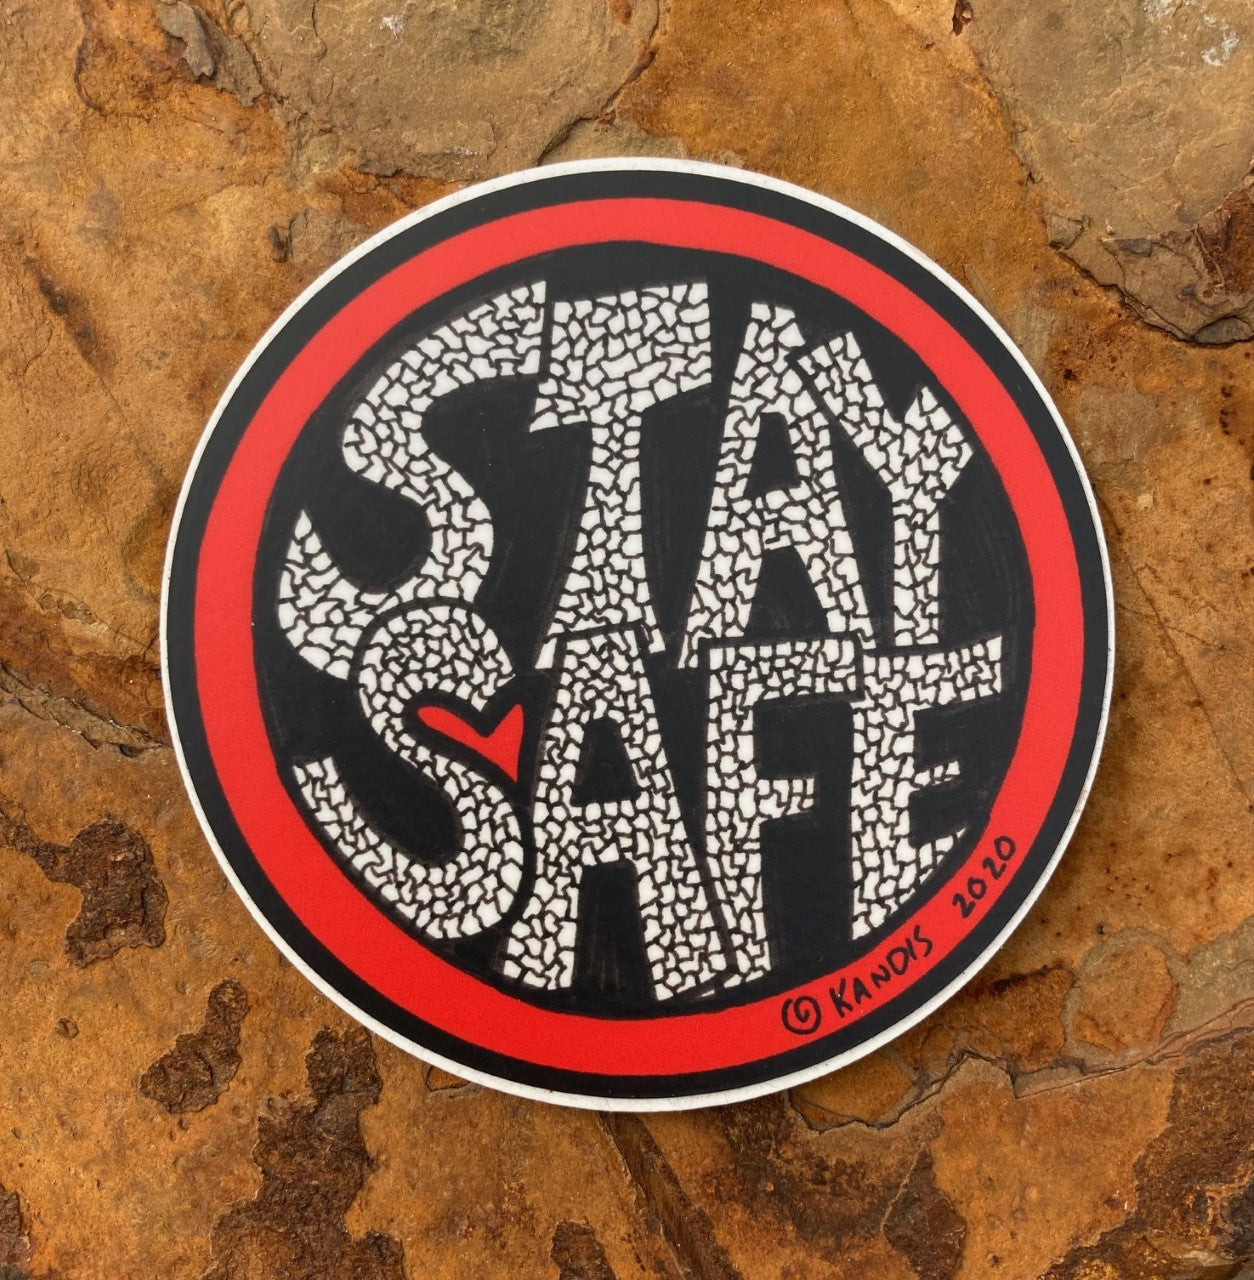 Stay Safe Sticker